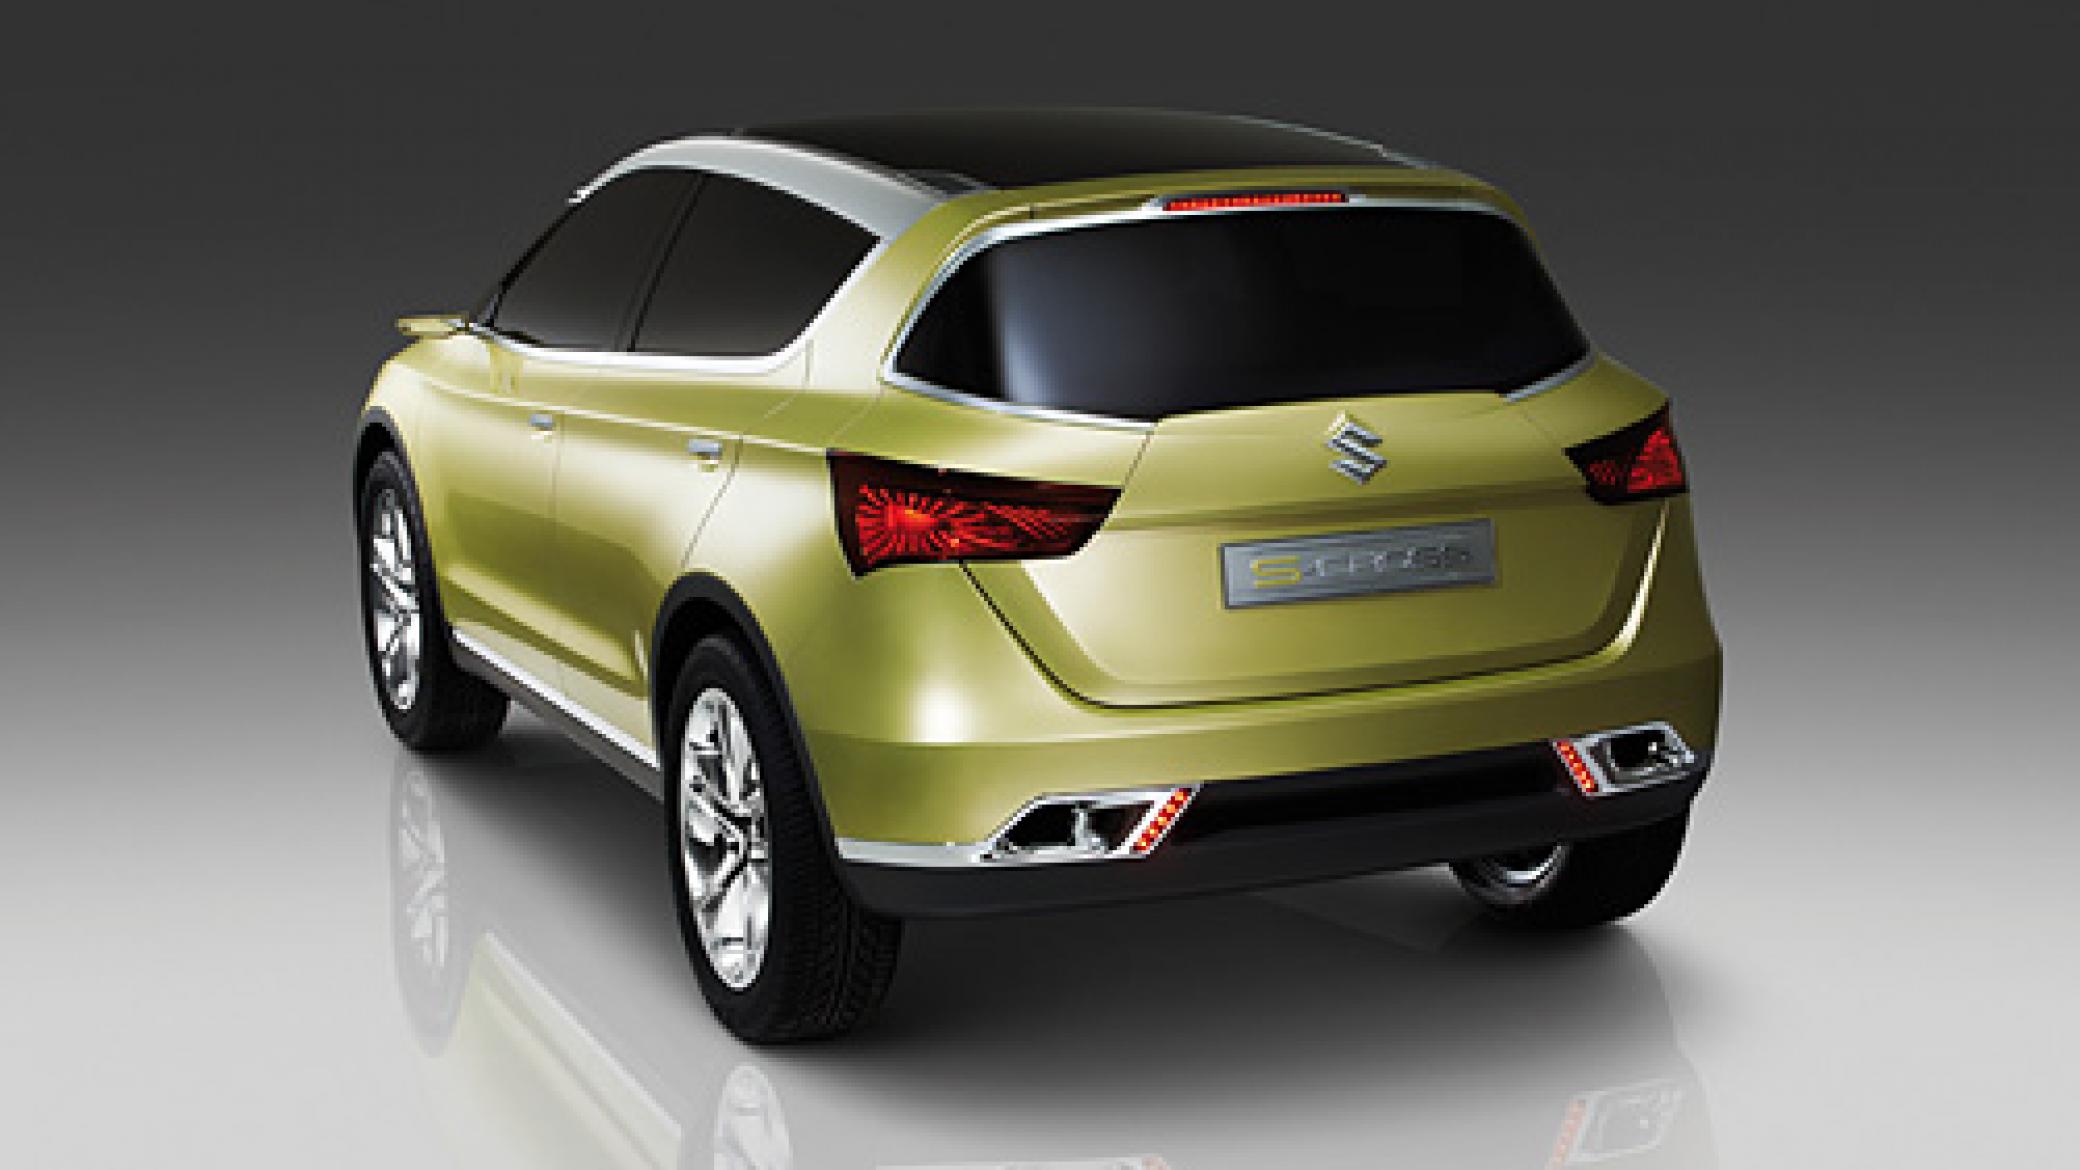 Le conceptcar Suzuki SCross le tout nouveau modèle SUV de classe